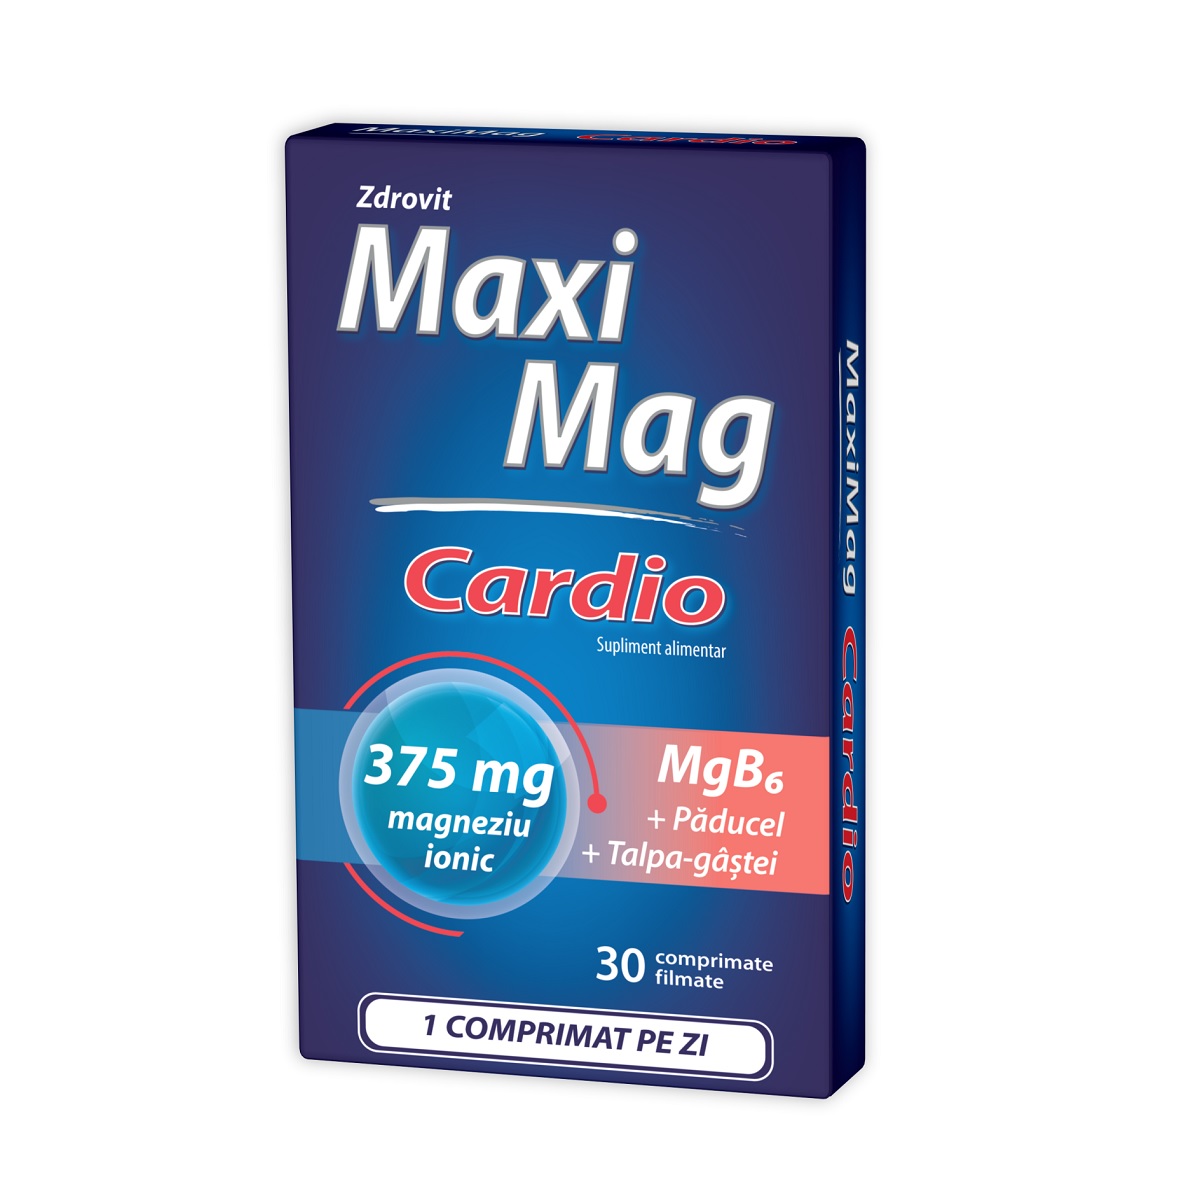 Uz general - MaxiMag Cardio 375 mg, 30 comprimate, Zdrovit, sinapis.ro